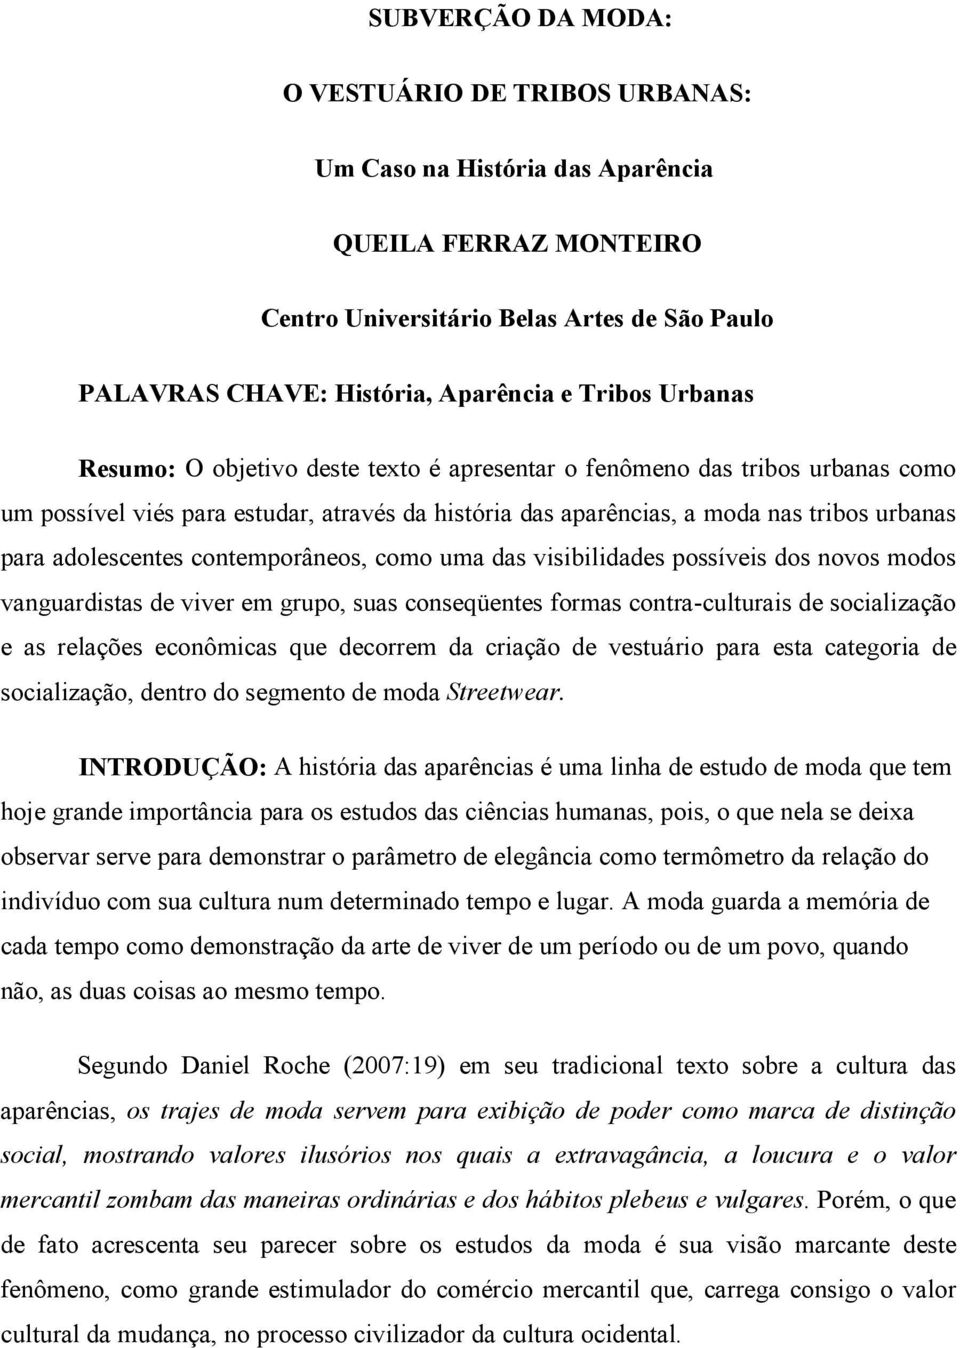 SUBVERÇÃO DA MODA: O VESTUÁRIO DE TRIBOS URBANAS: Um Caso na História das  Aparência QUEILA FERRAZ MONTEIRO - PDF Download grátis